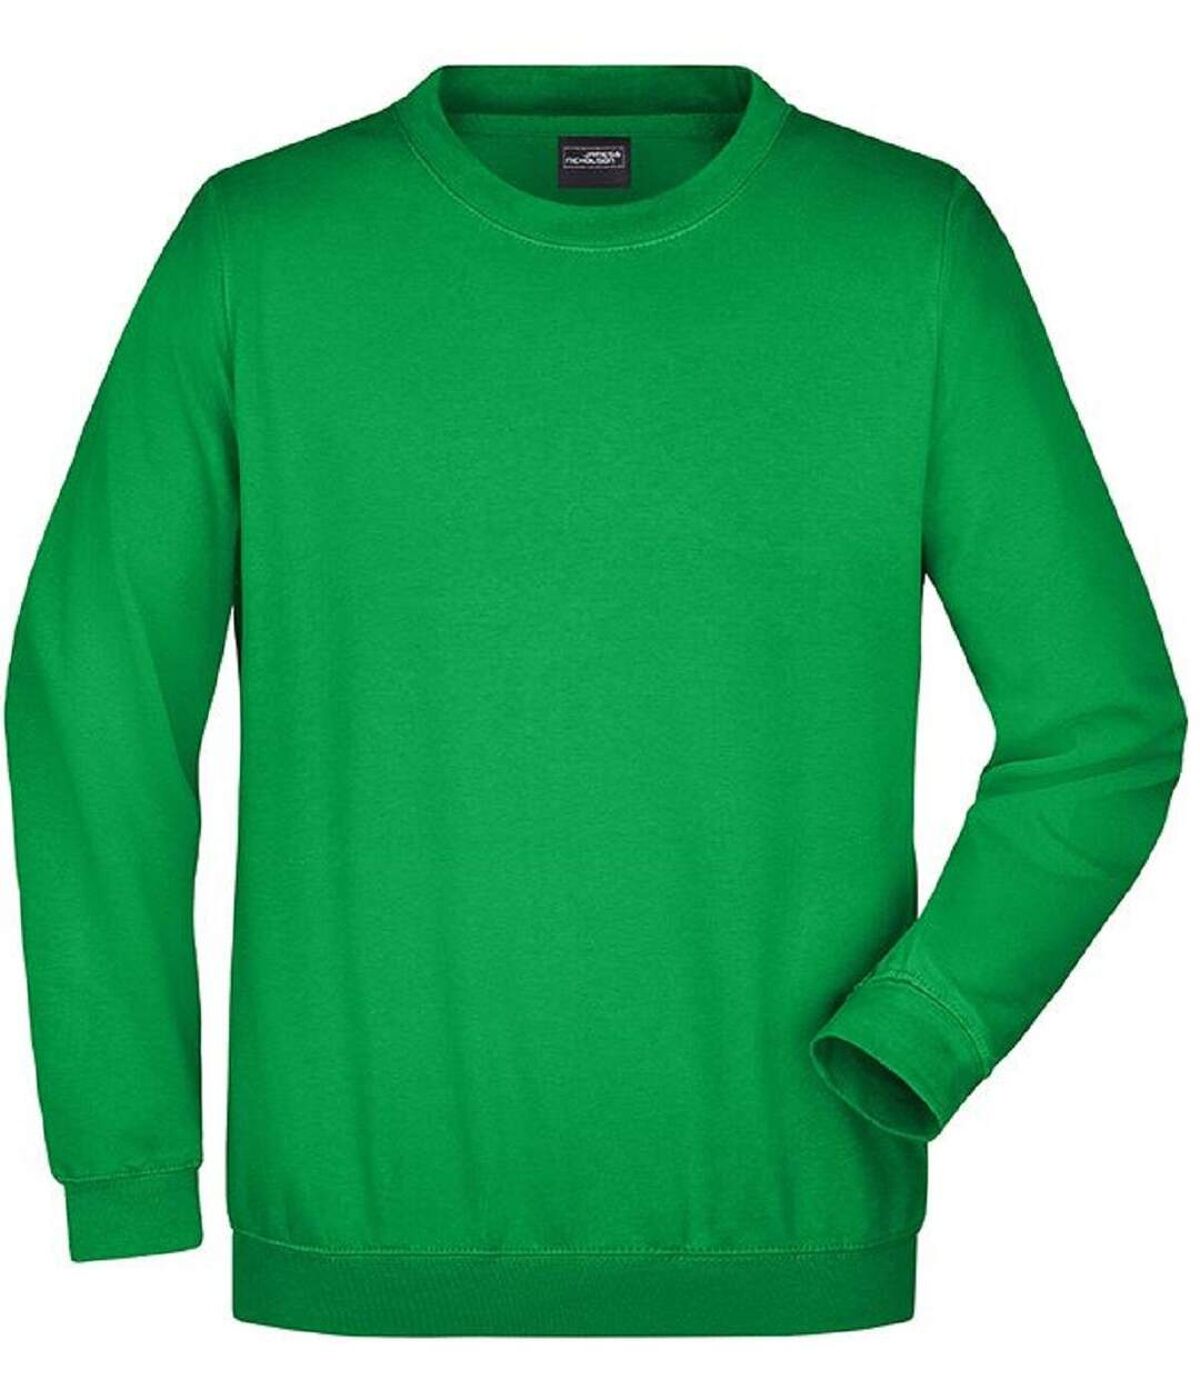 Sweat-shirt col rond - JN040 - vert fougère - mixte homme femme